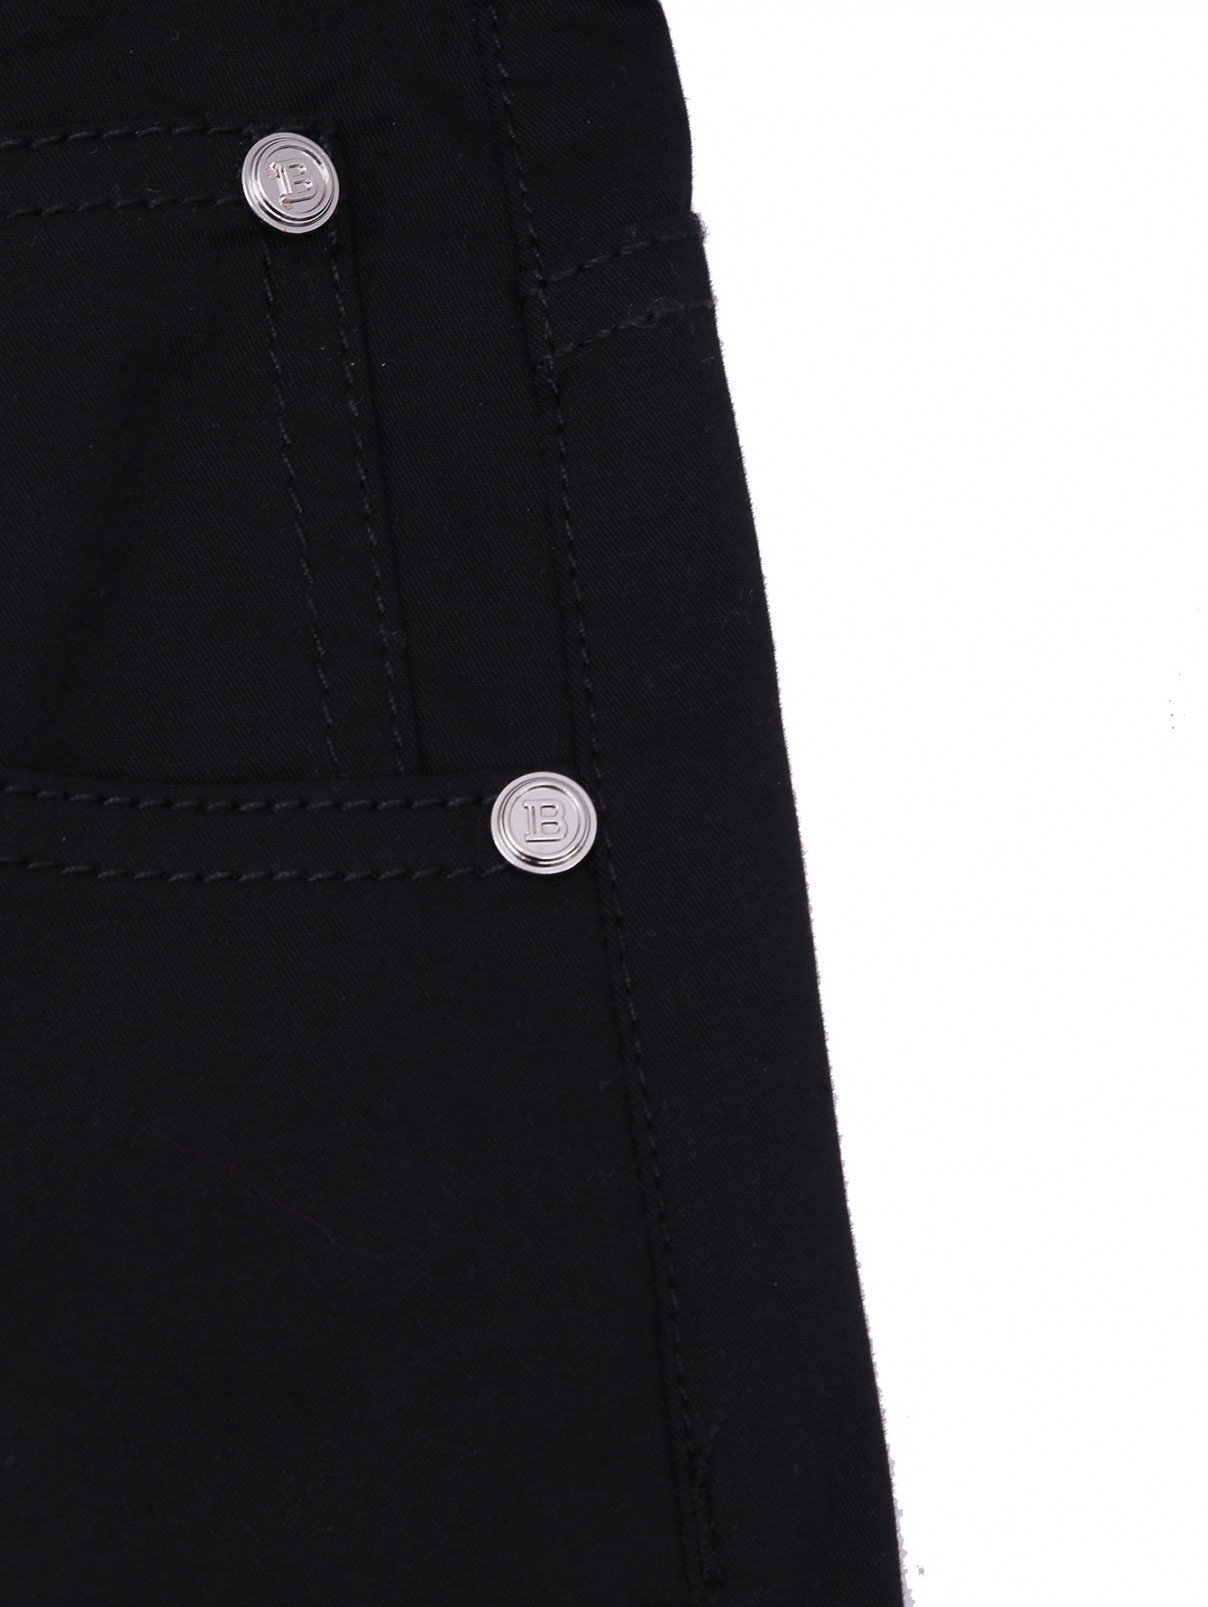 Хлопковые брюки с принтом BALMAIN  –  Деталь1  – Цвет:  Черный